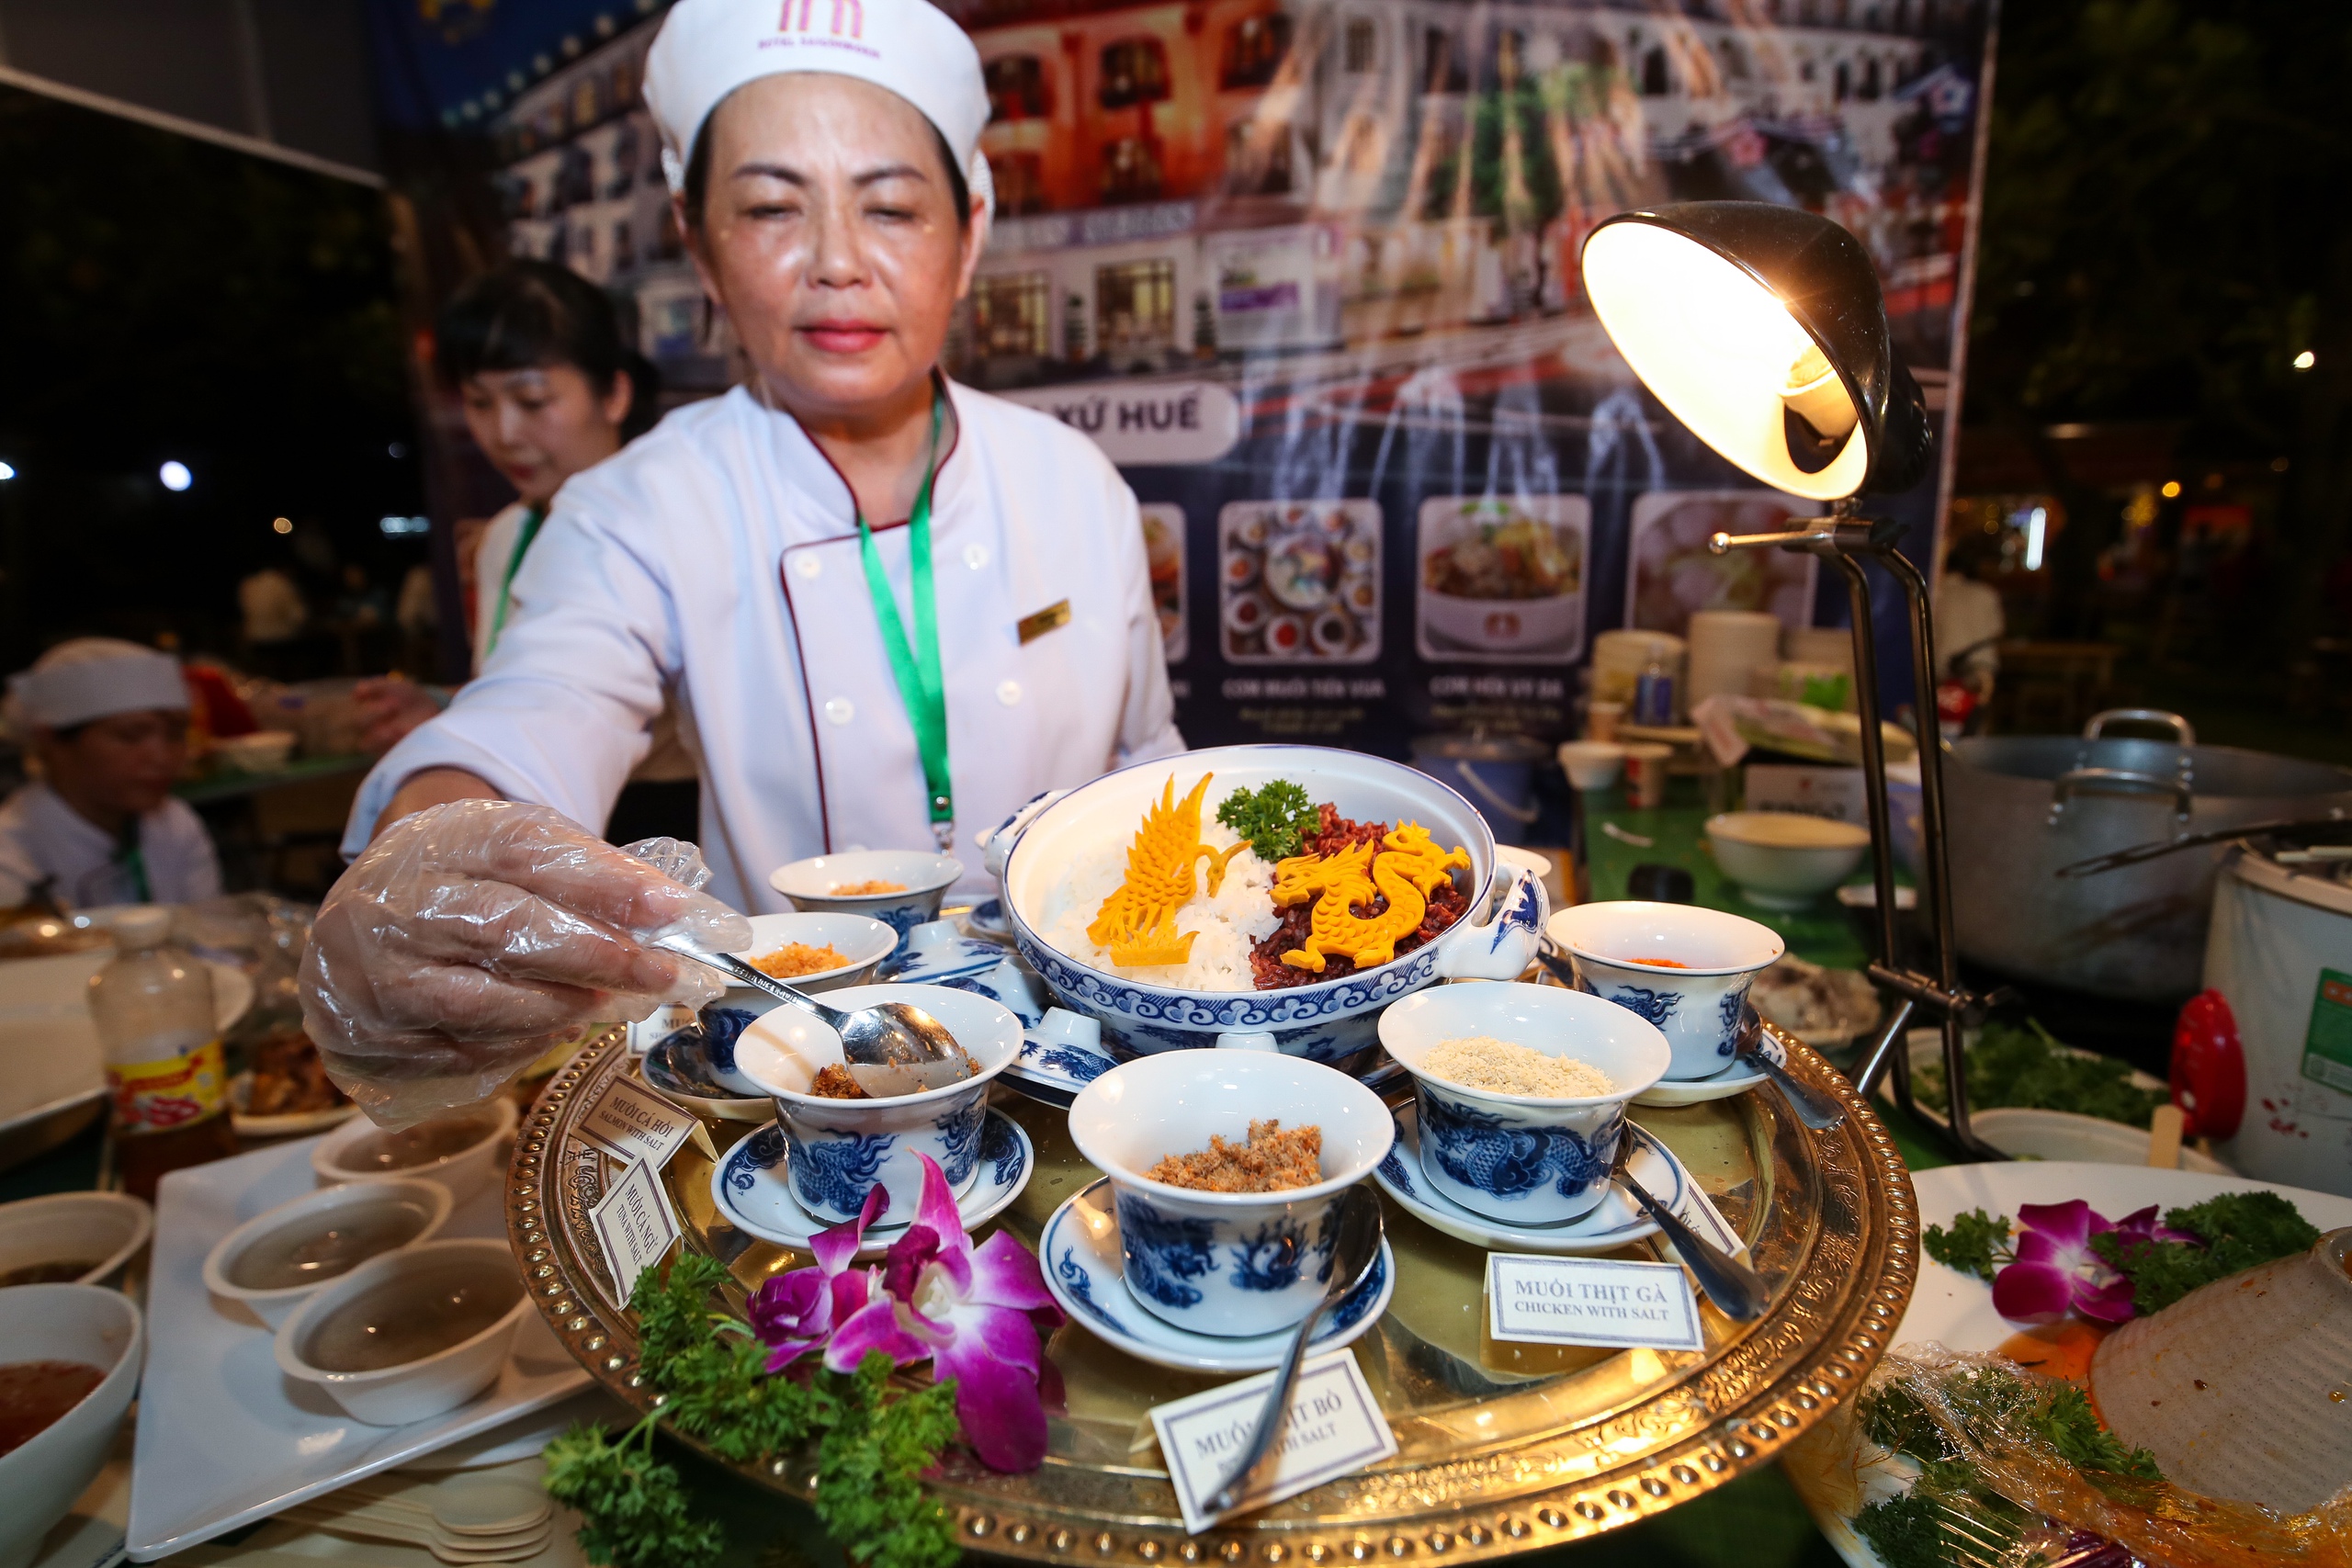 Cận cảnh món ngon vùng miền: thực khách ‘quên lối về’ ở lễ hội ẩm thực Việt- Ảnh 6.